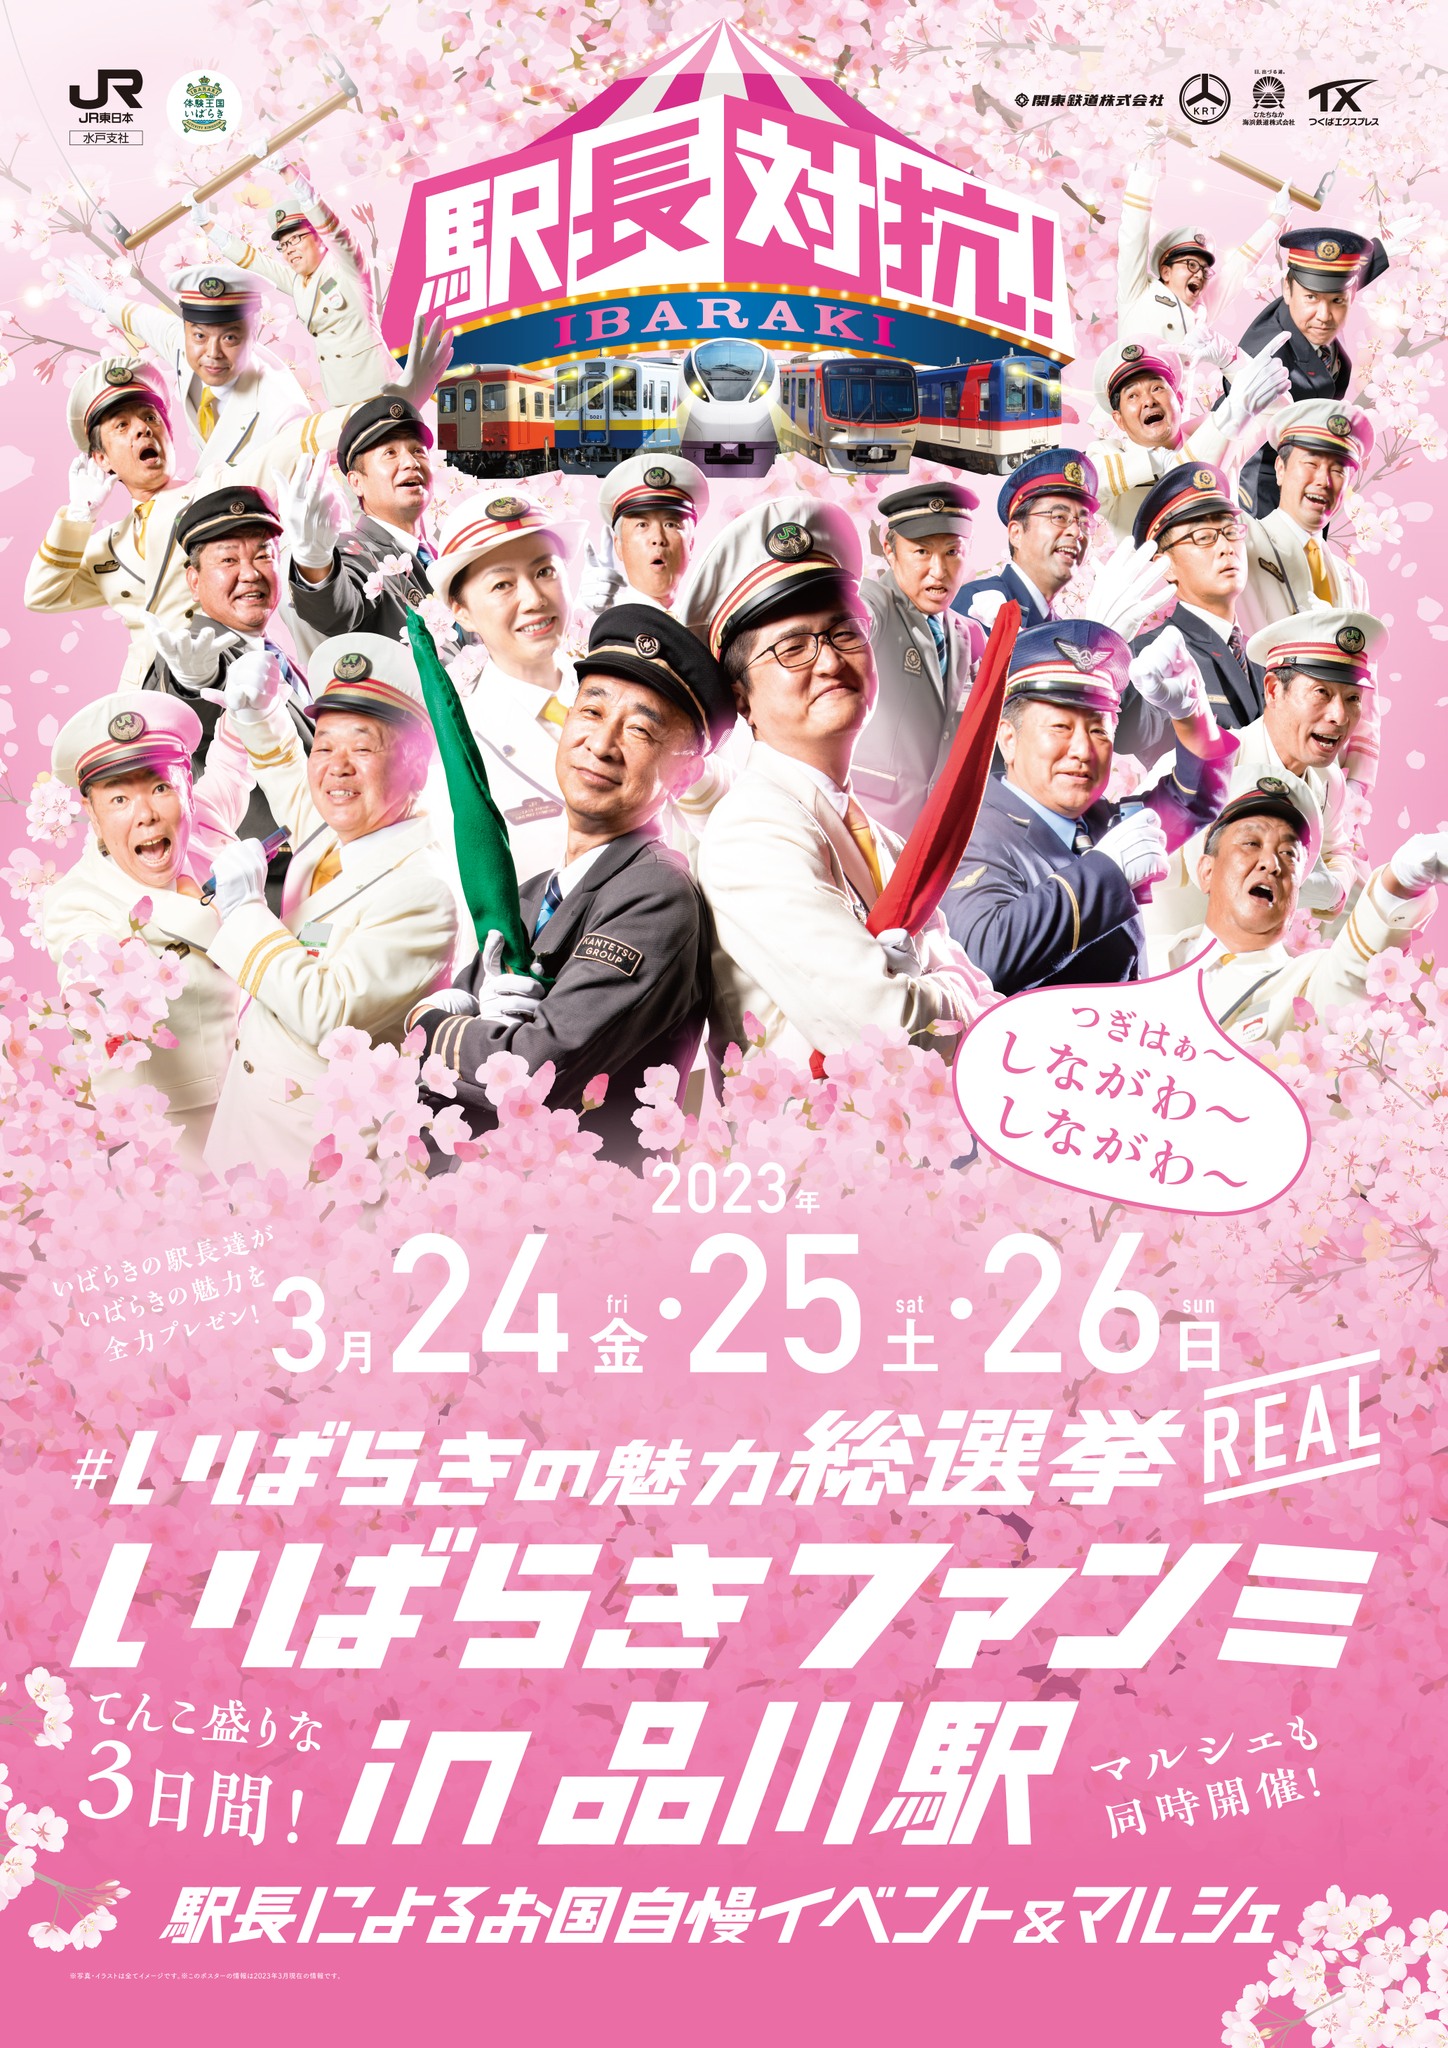 茨城観光の魅力を各駅長が競い合うイベントが開催されます!page-visual 茨城観光の魅力を各駅長が競い合うイベントが開催されます!ビジュアル